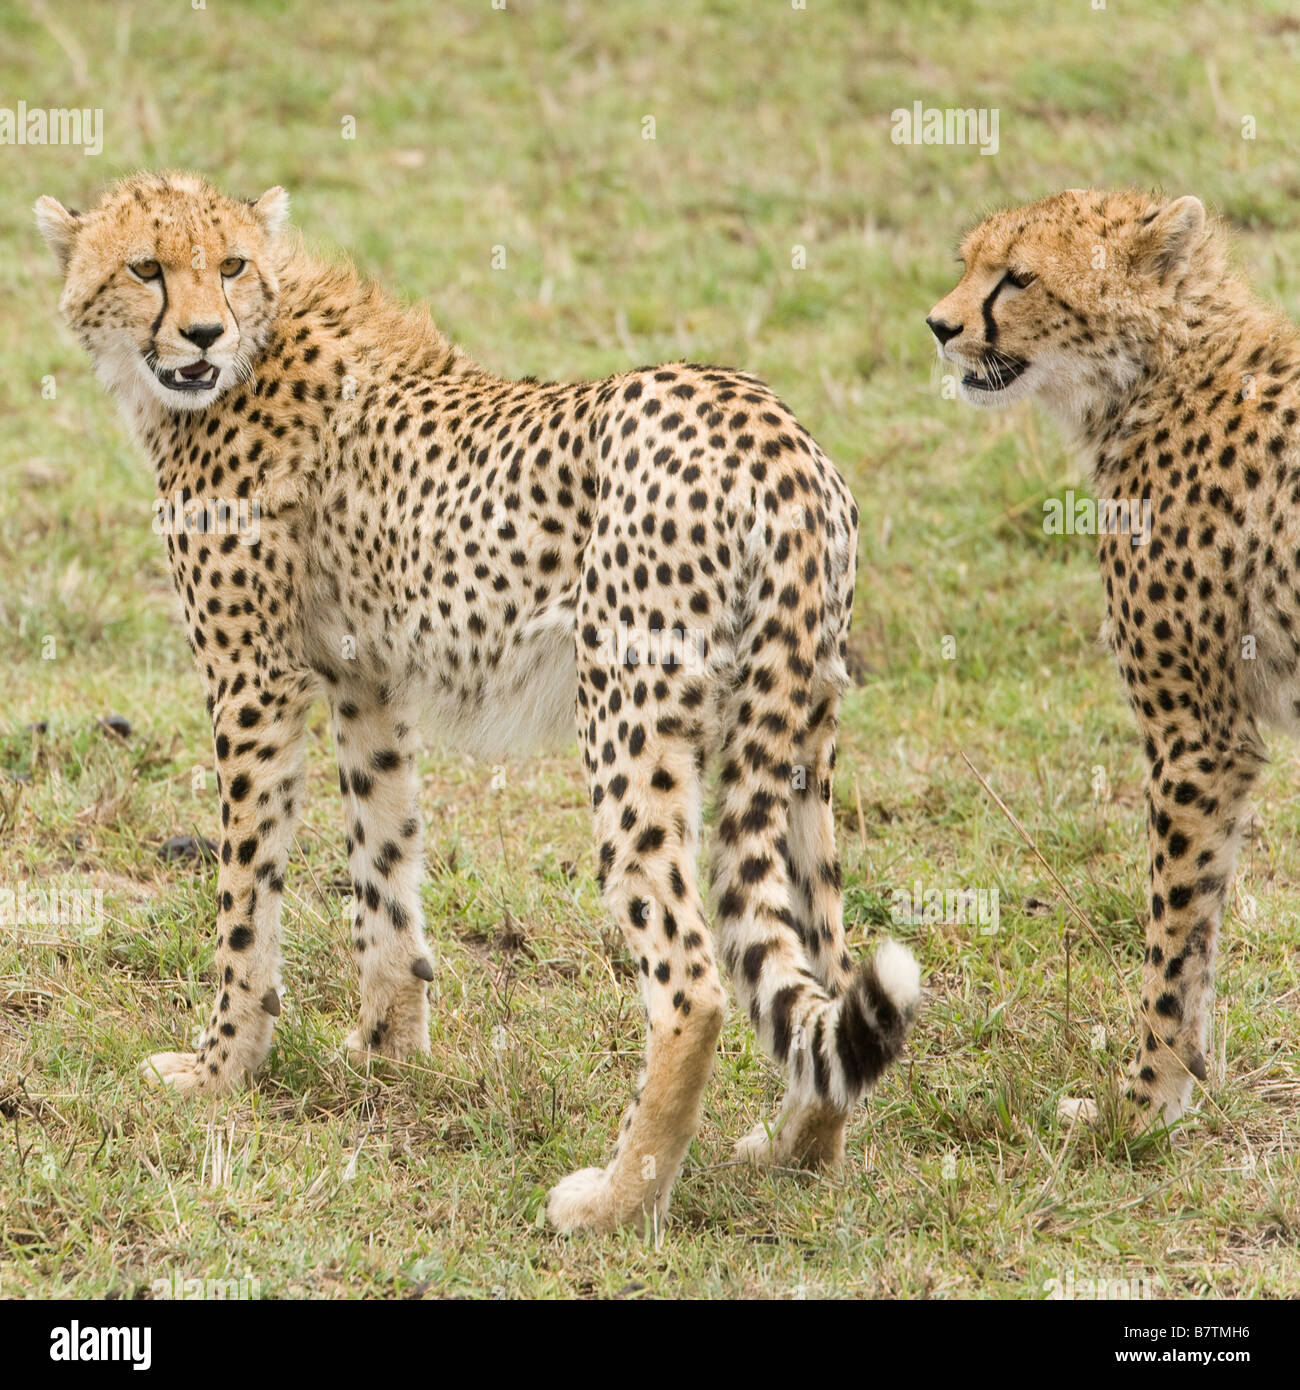 Cheetah jungen aufmerksam und suchen, um in der Masai Mara in Kenia Stockfoto